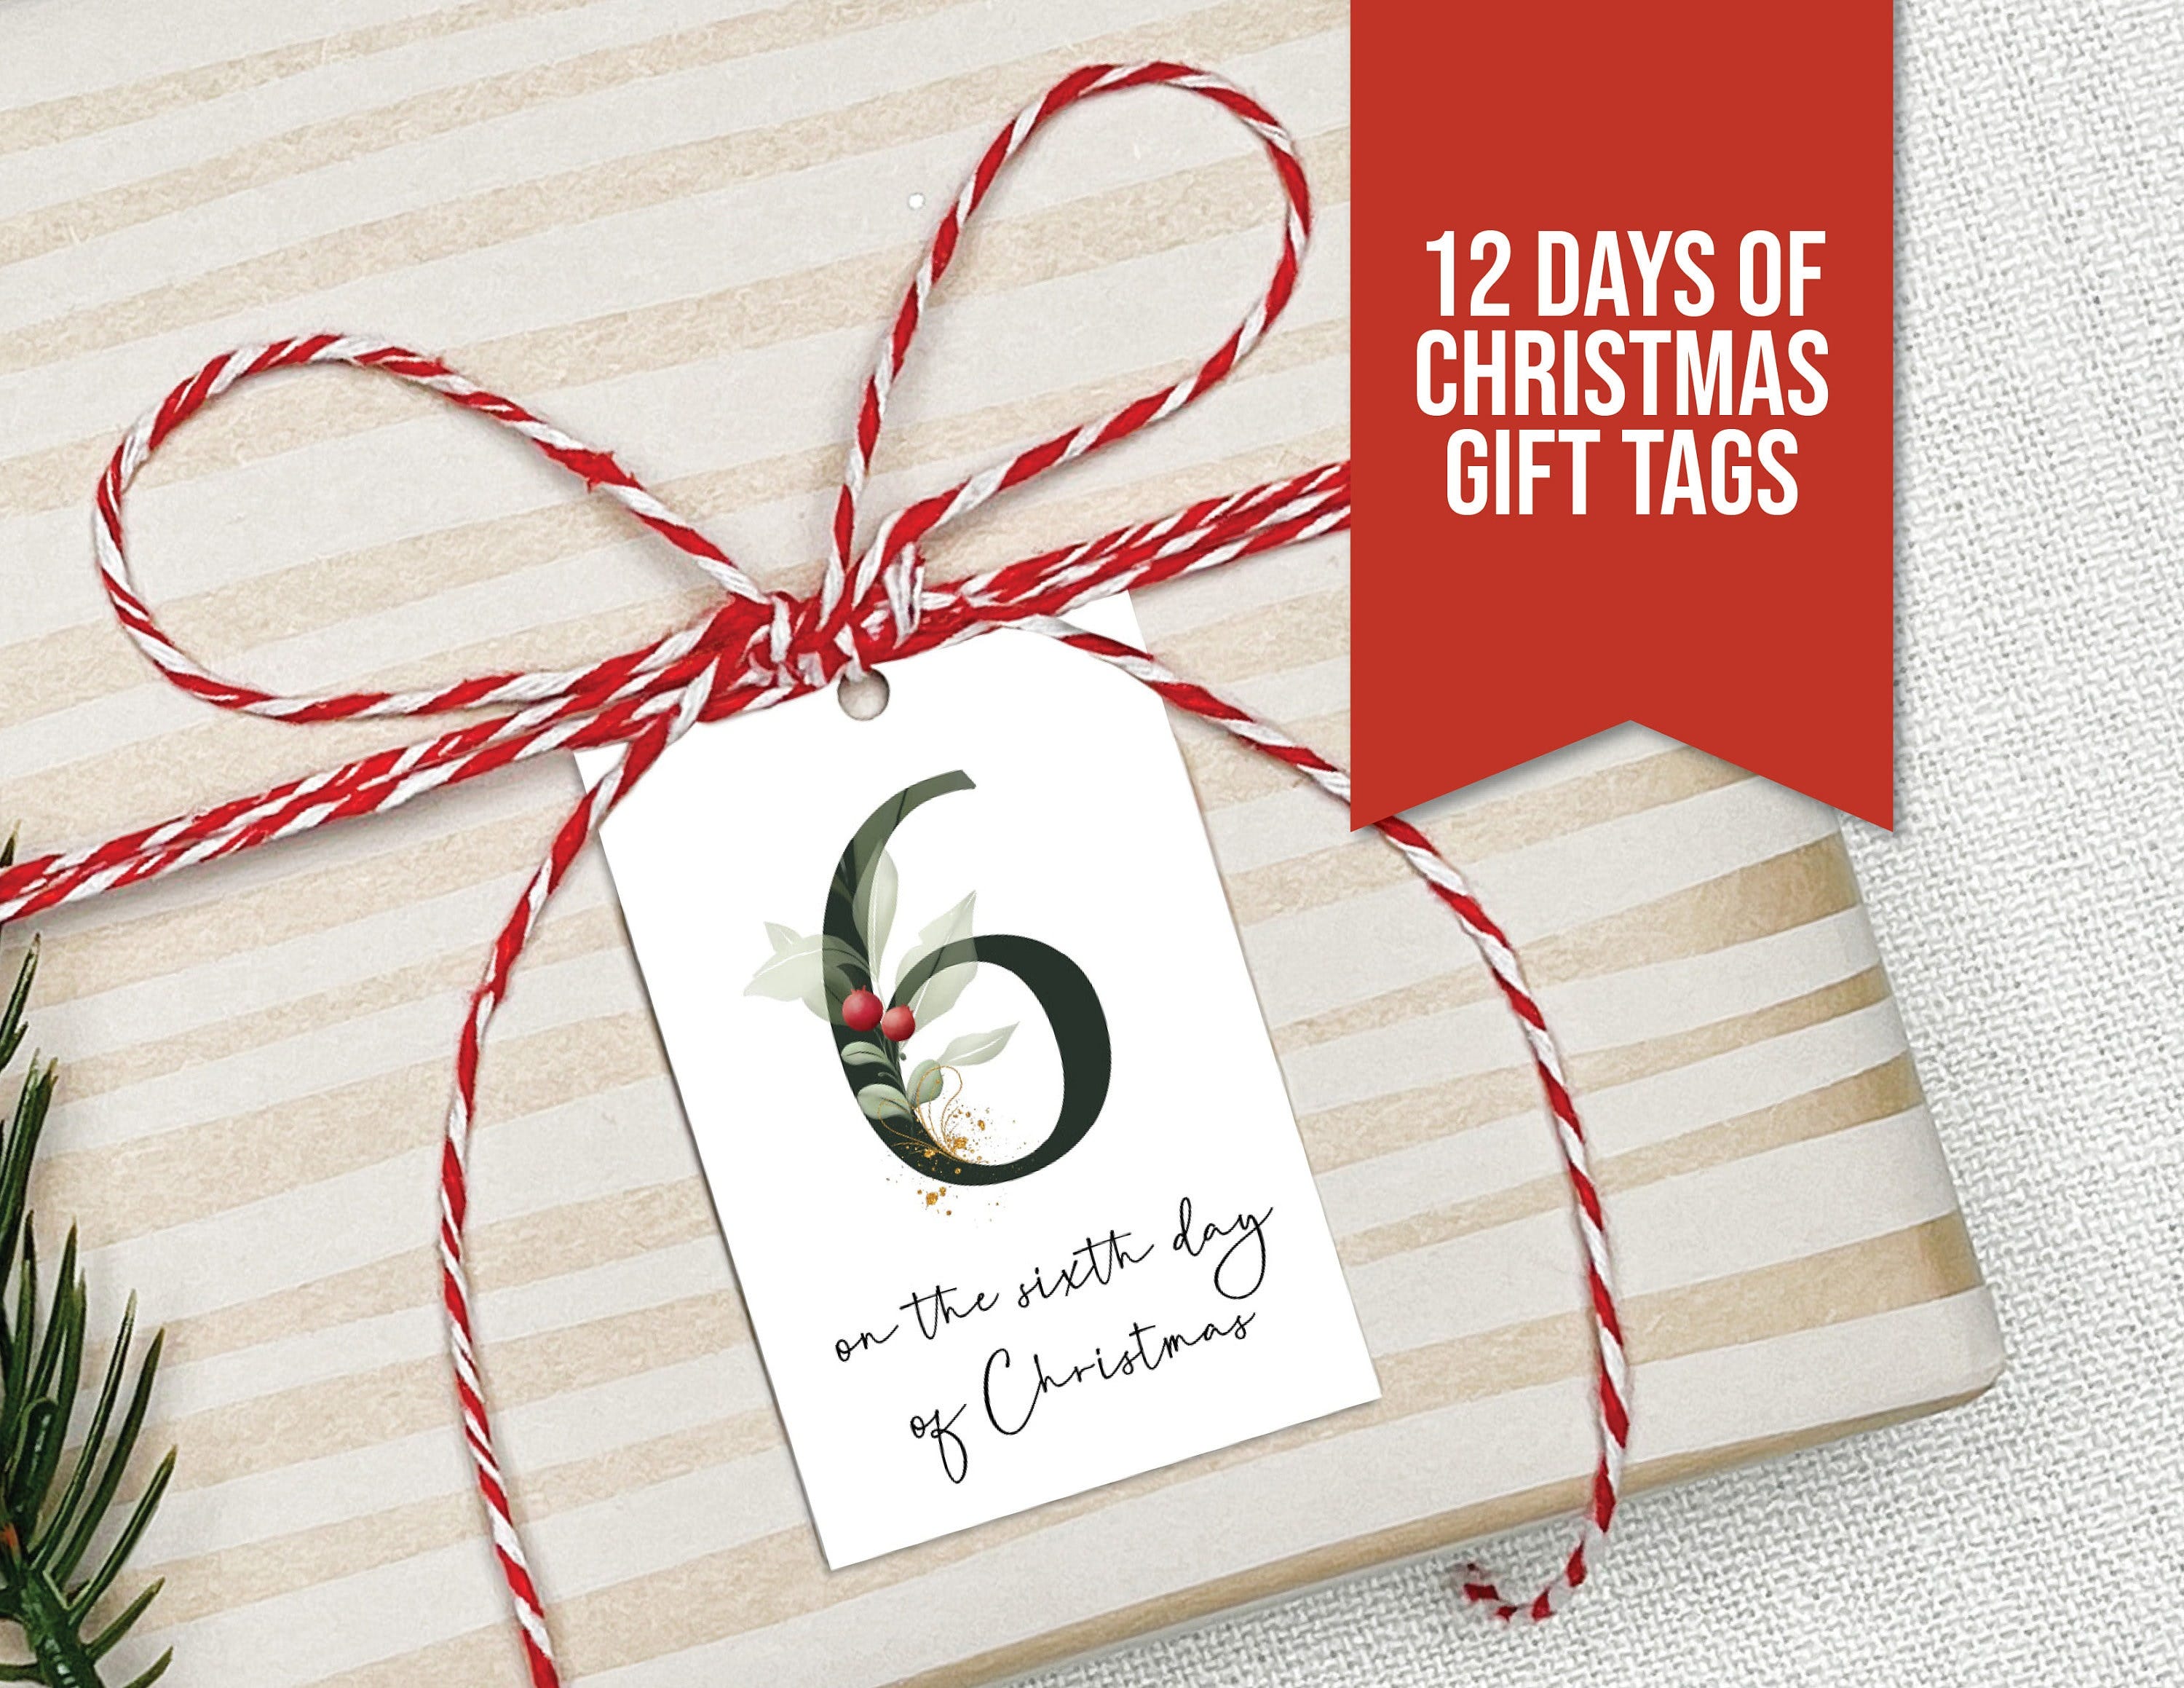 Twelve Days of Christmas Gift Tags, Printable Christmas Tags, Printable Gift Tags, 12 Days of Christmas Gifts